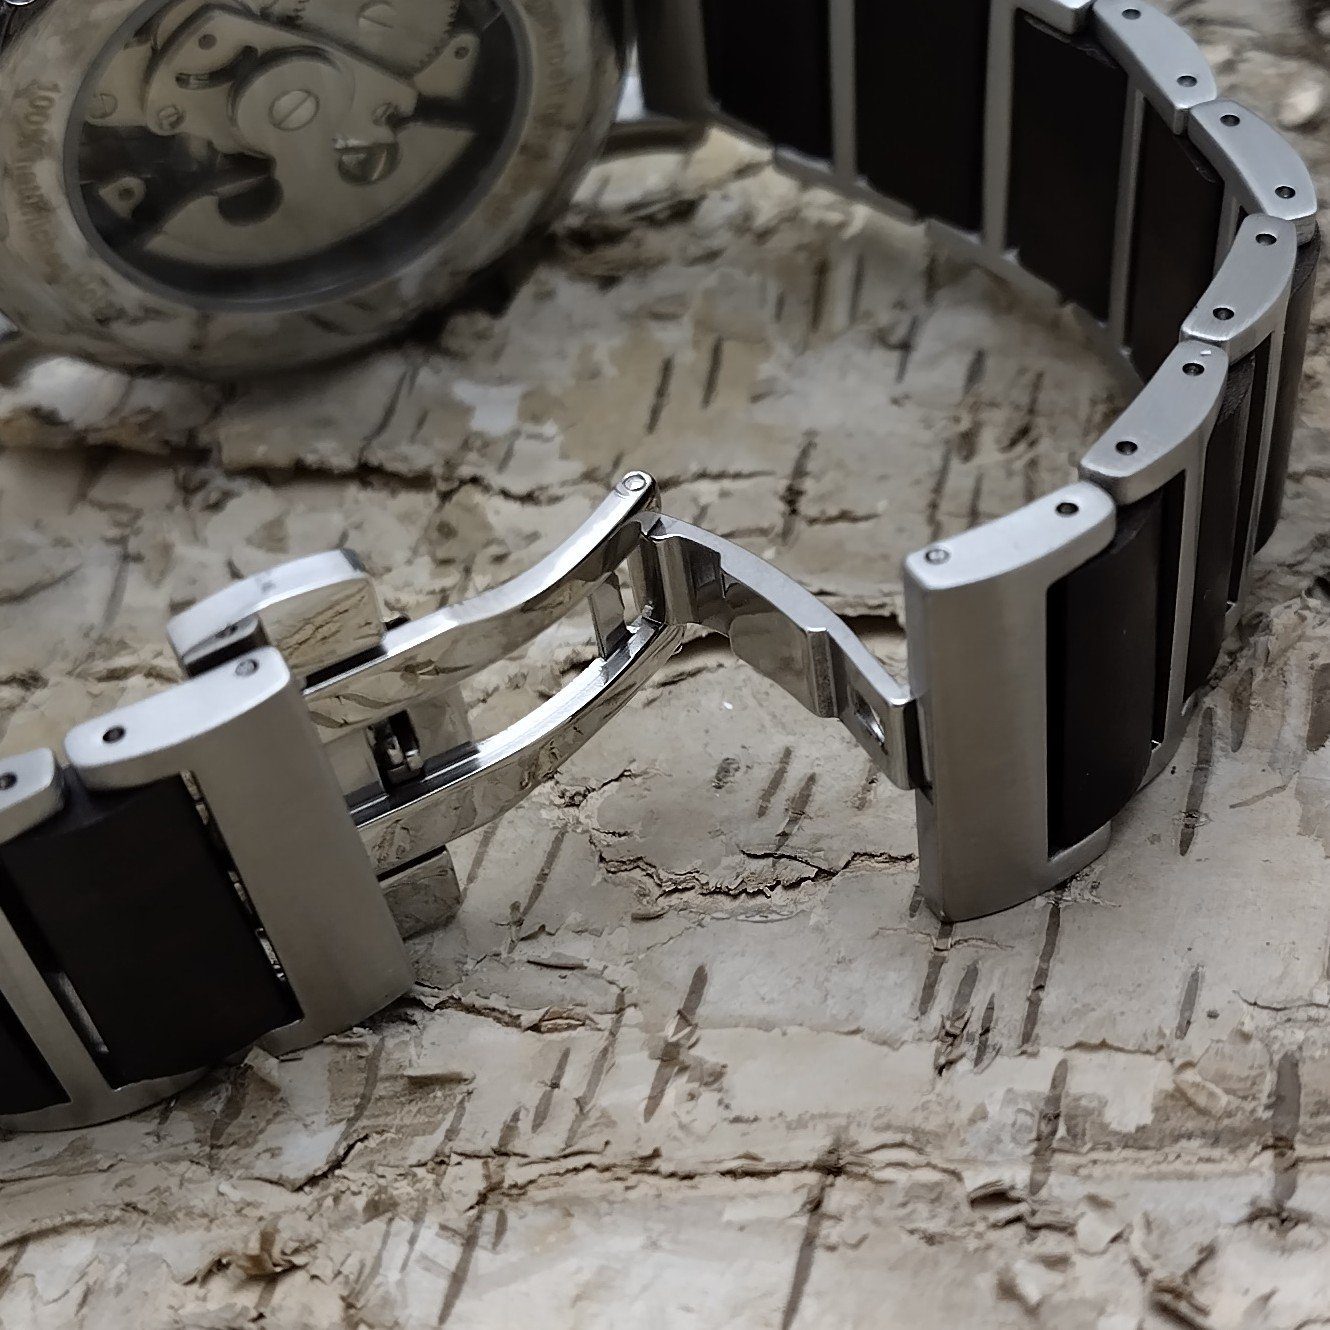 Herren silber, Edelstahl braun Armband Uhr, COCHEM Automatikuhr weiß, Holz matt & Holzwerk